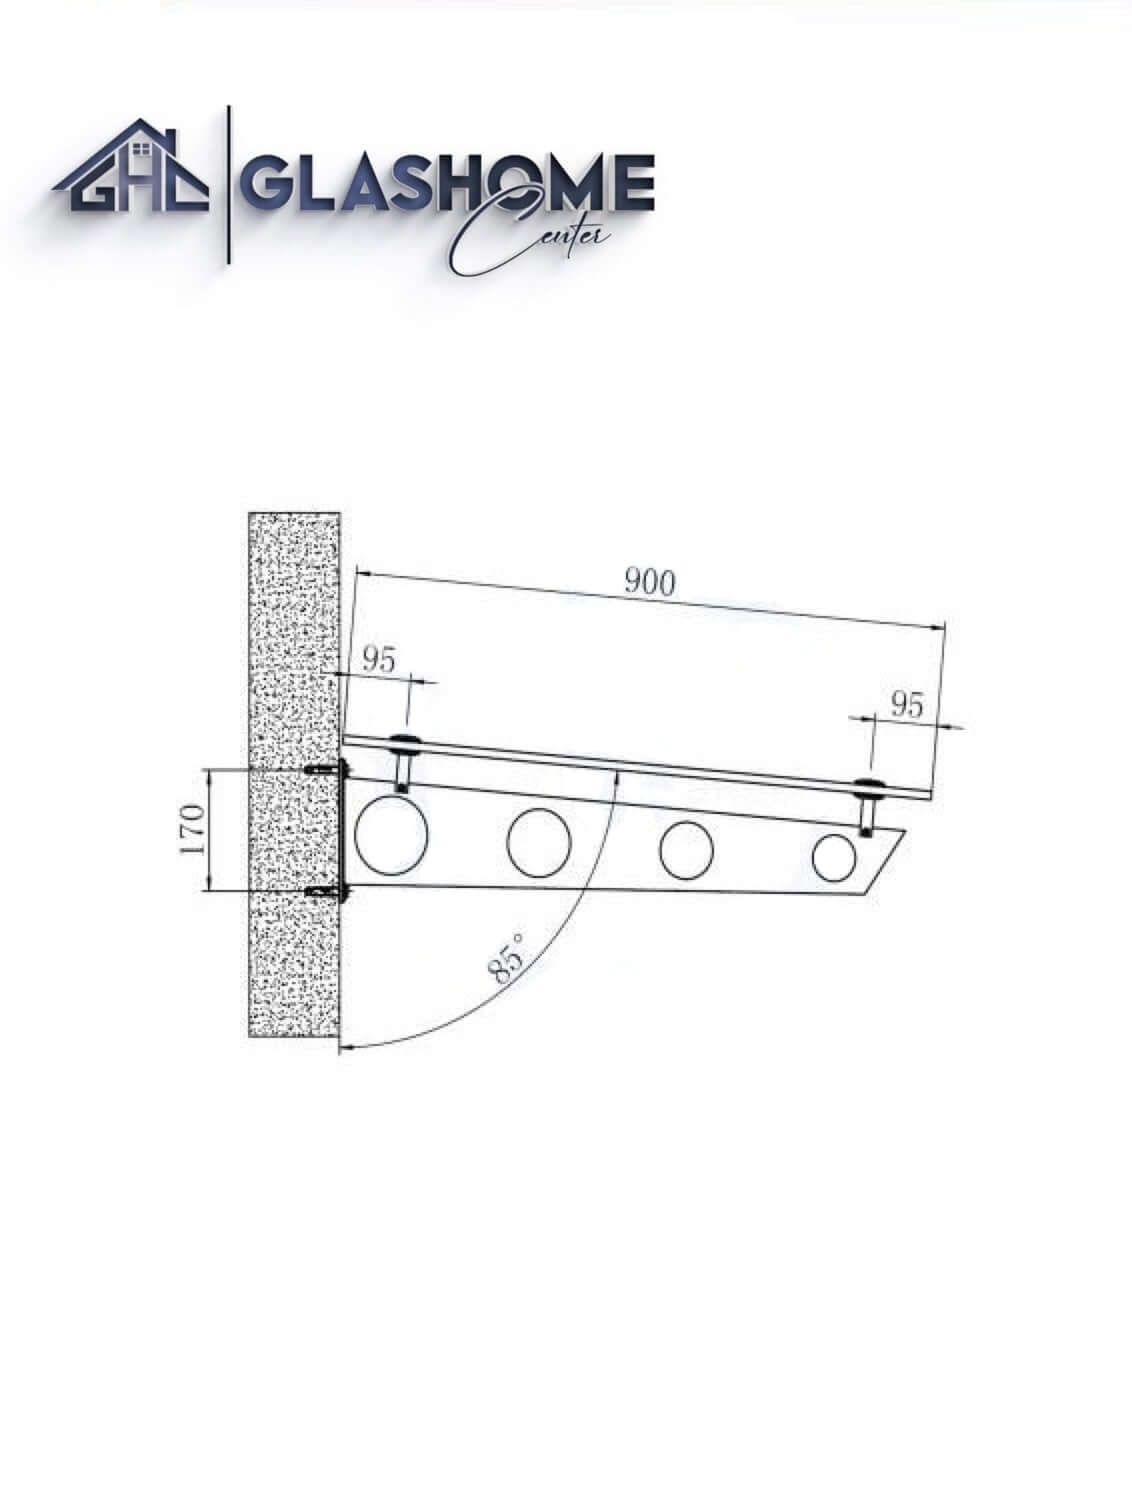 GlasHomeCenter - Glasvordach - Milchglas - 200x90cm - 13,1mm VSG - incl. 2 varianti Edelstahlhalterungen nere "Stoccolma"